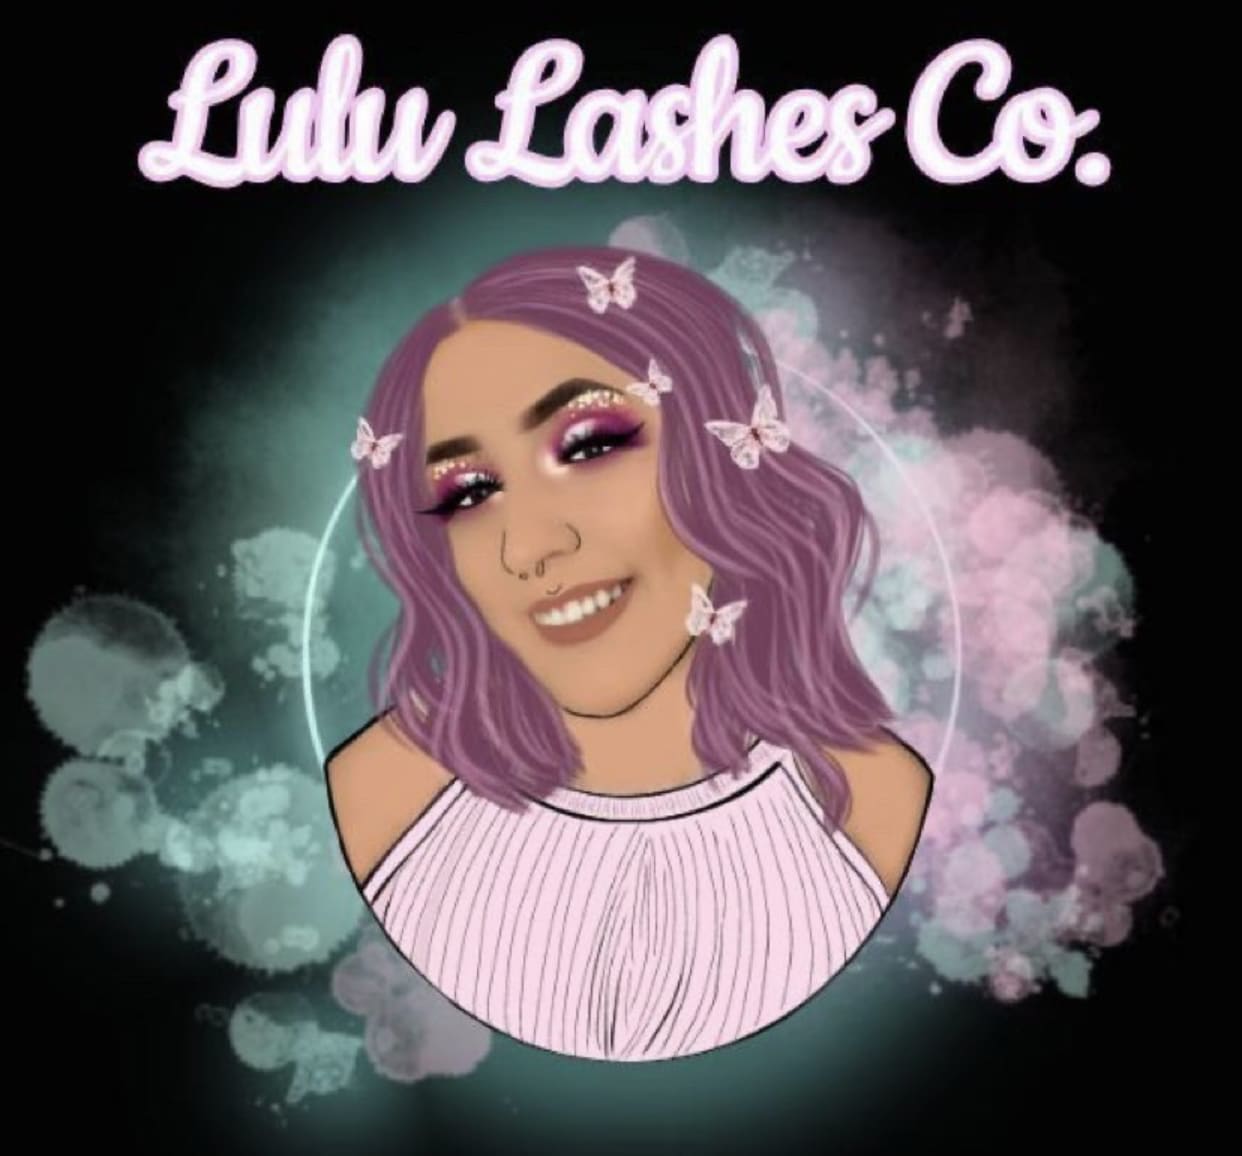 Lulu Lashes Co